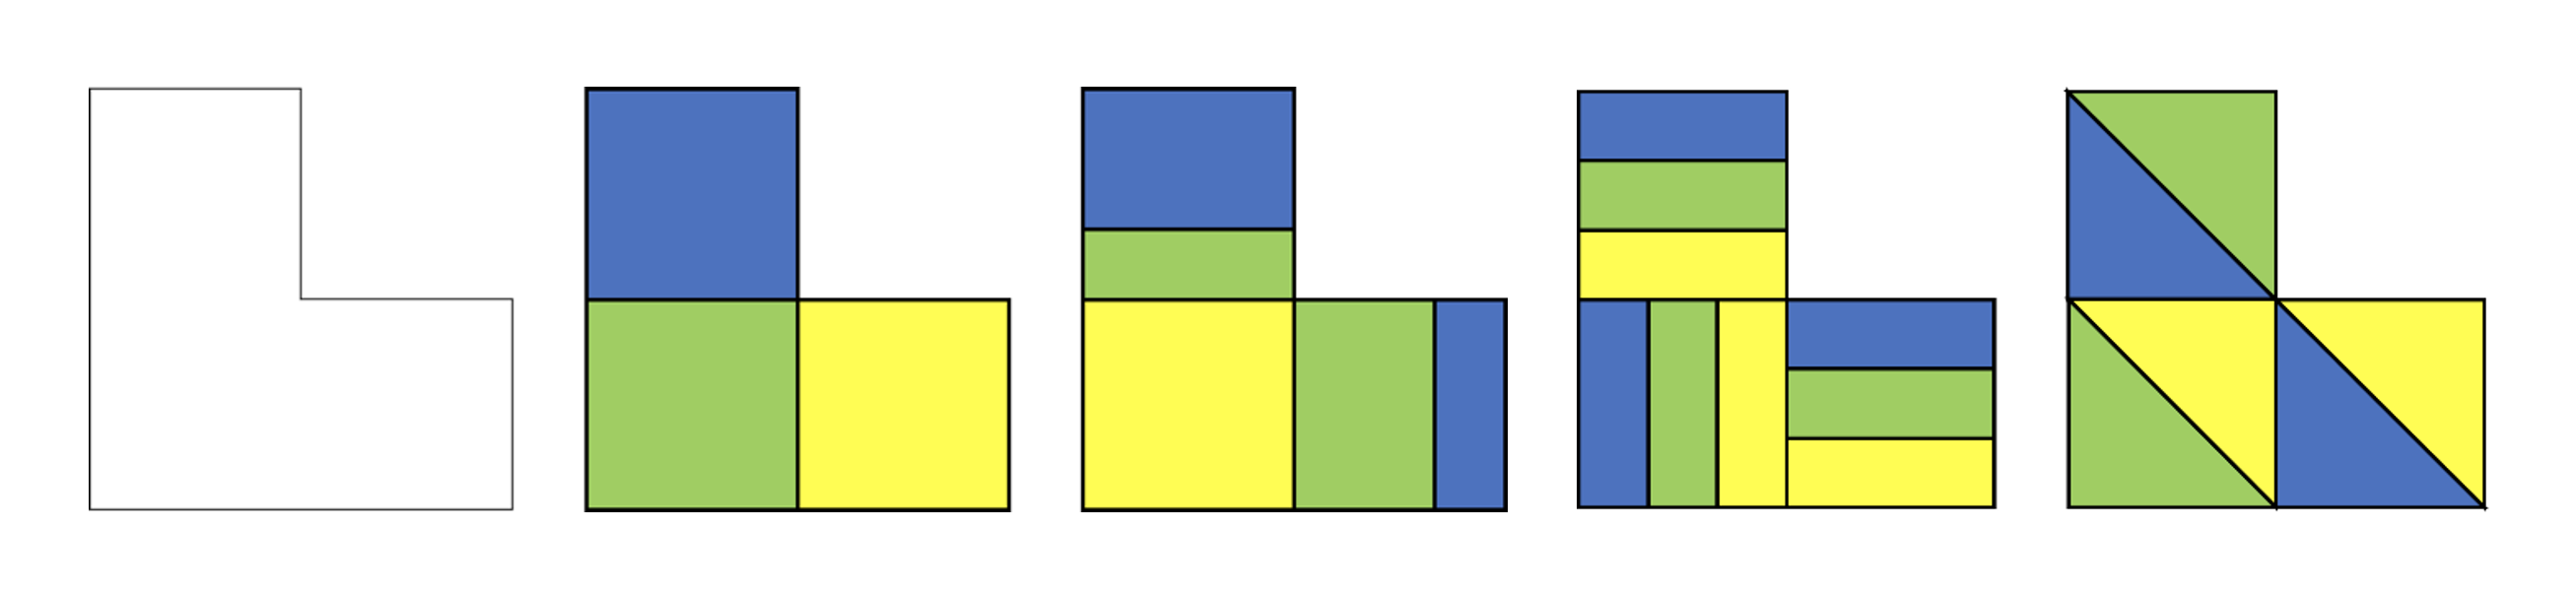 Alcuni esempi di suddivisione in terzi di una figura non standard.